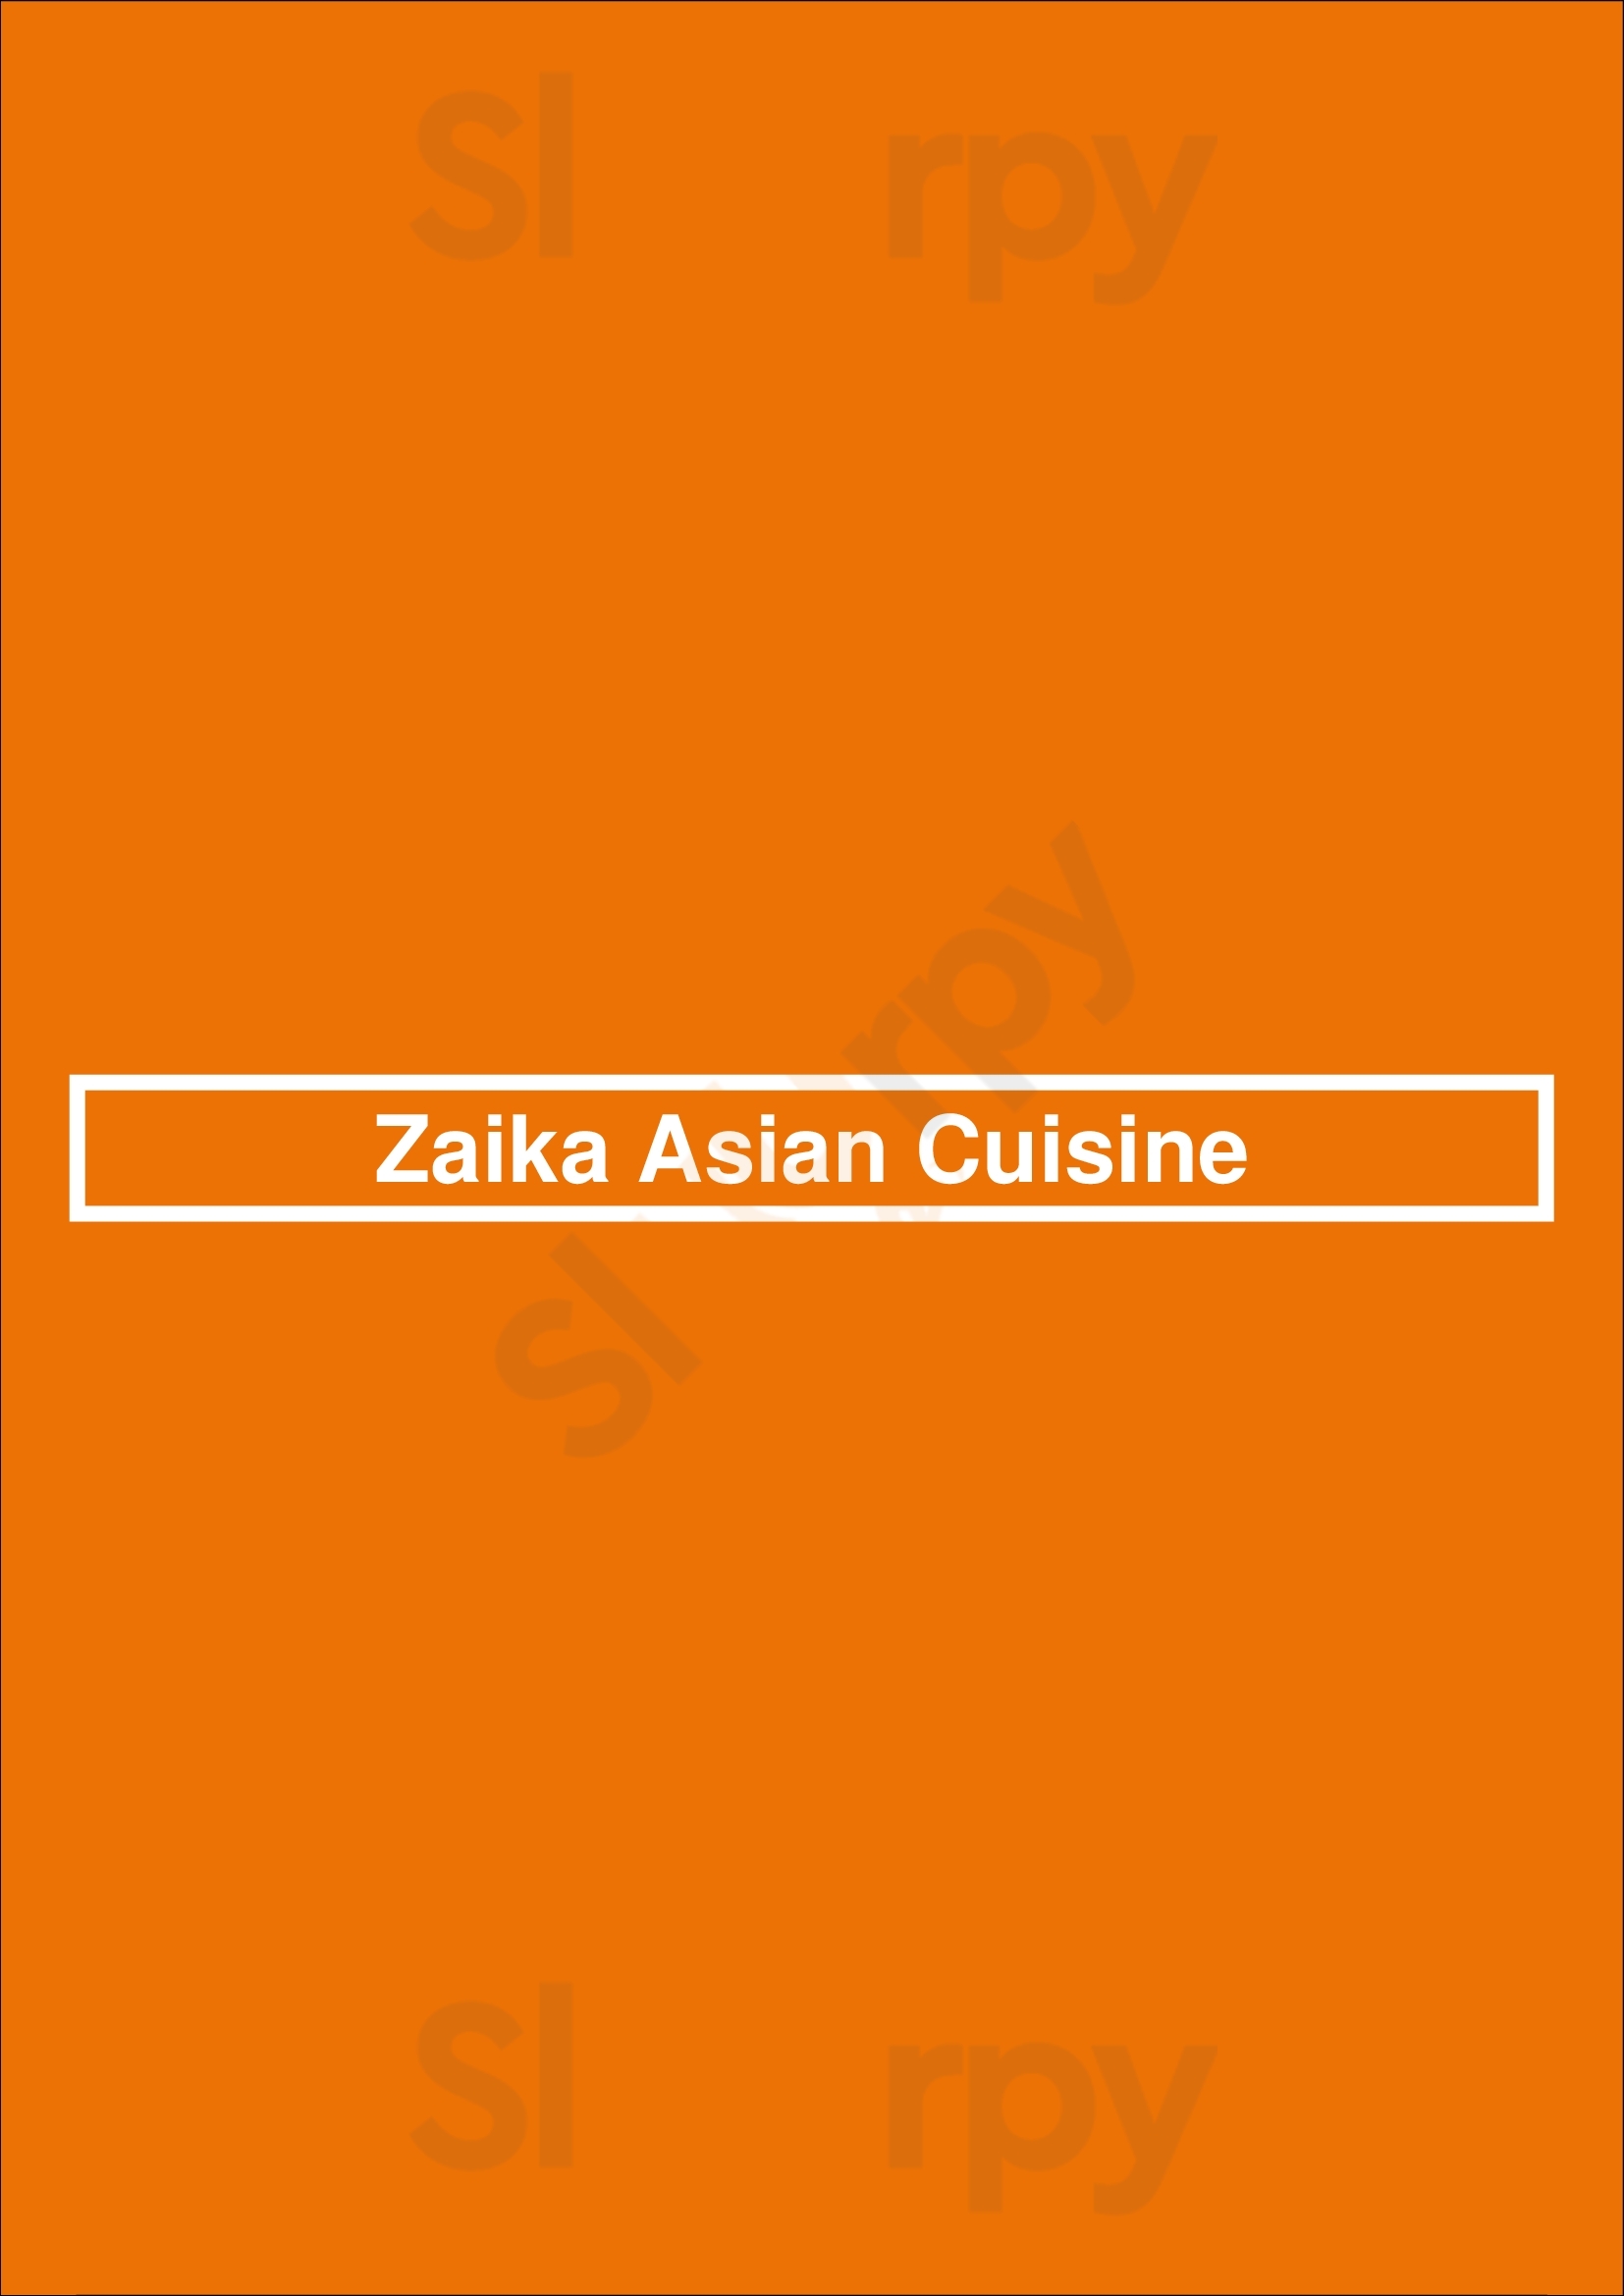 Zaika Asian Cuisine Cardiff Menu - 1